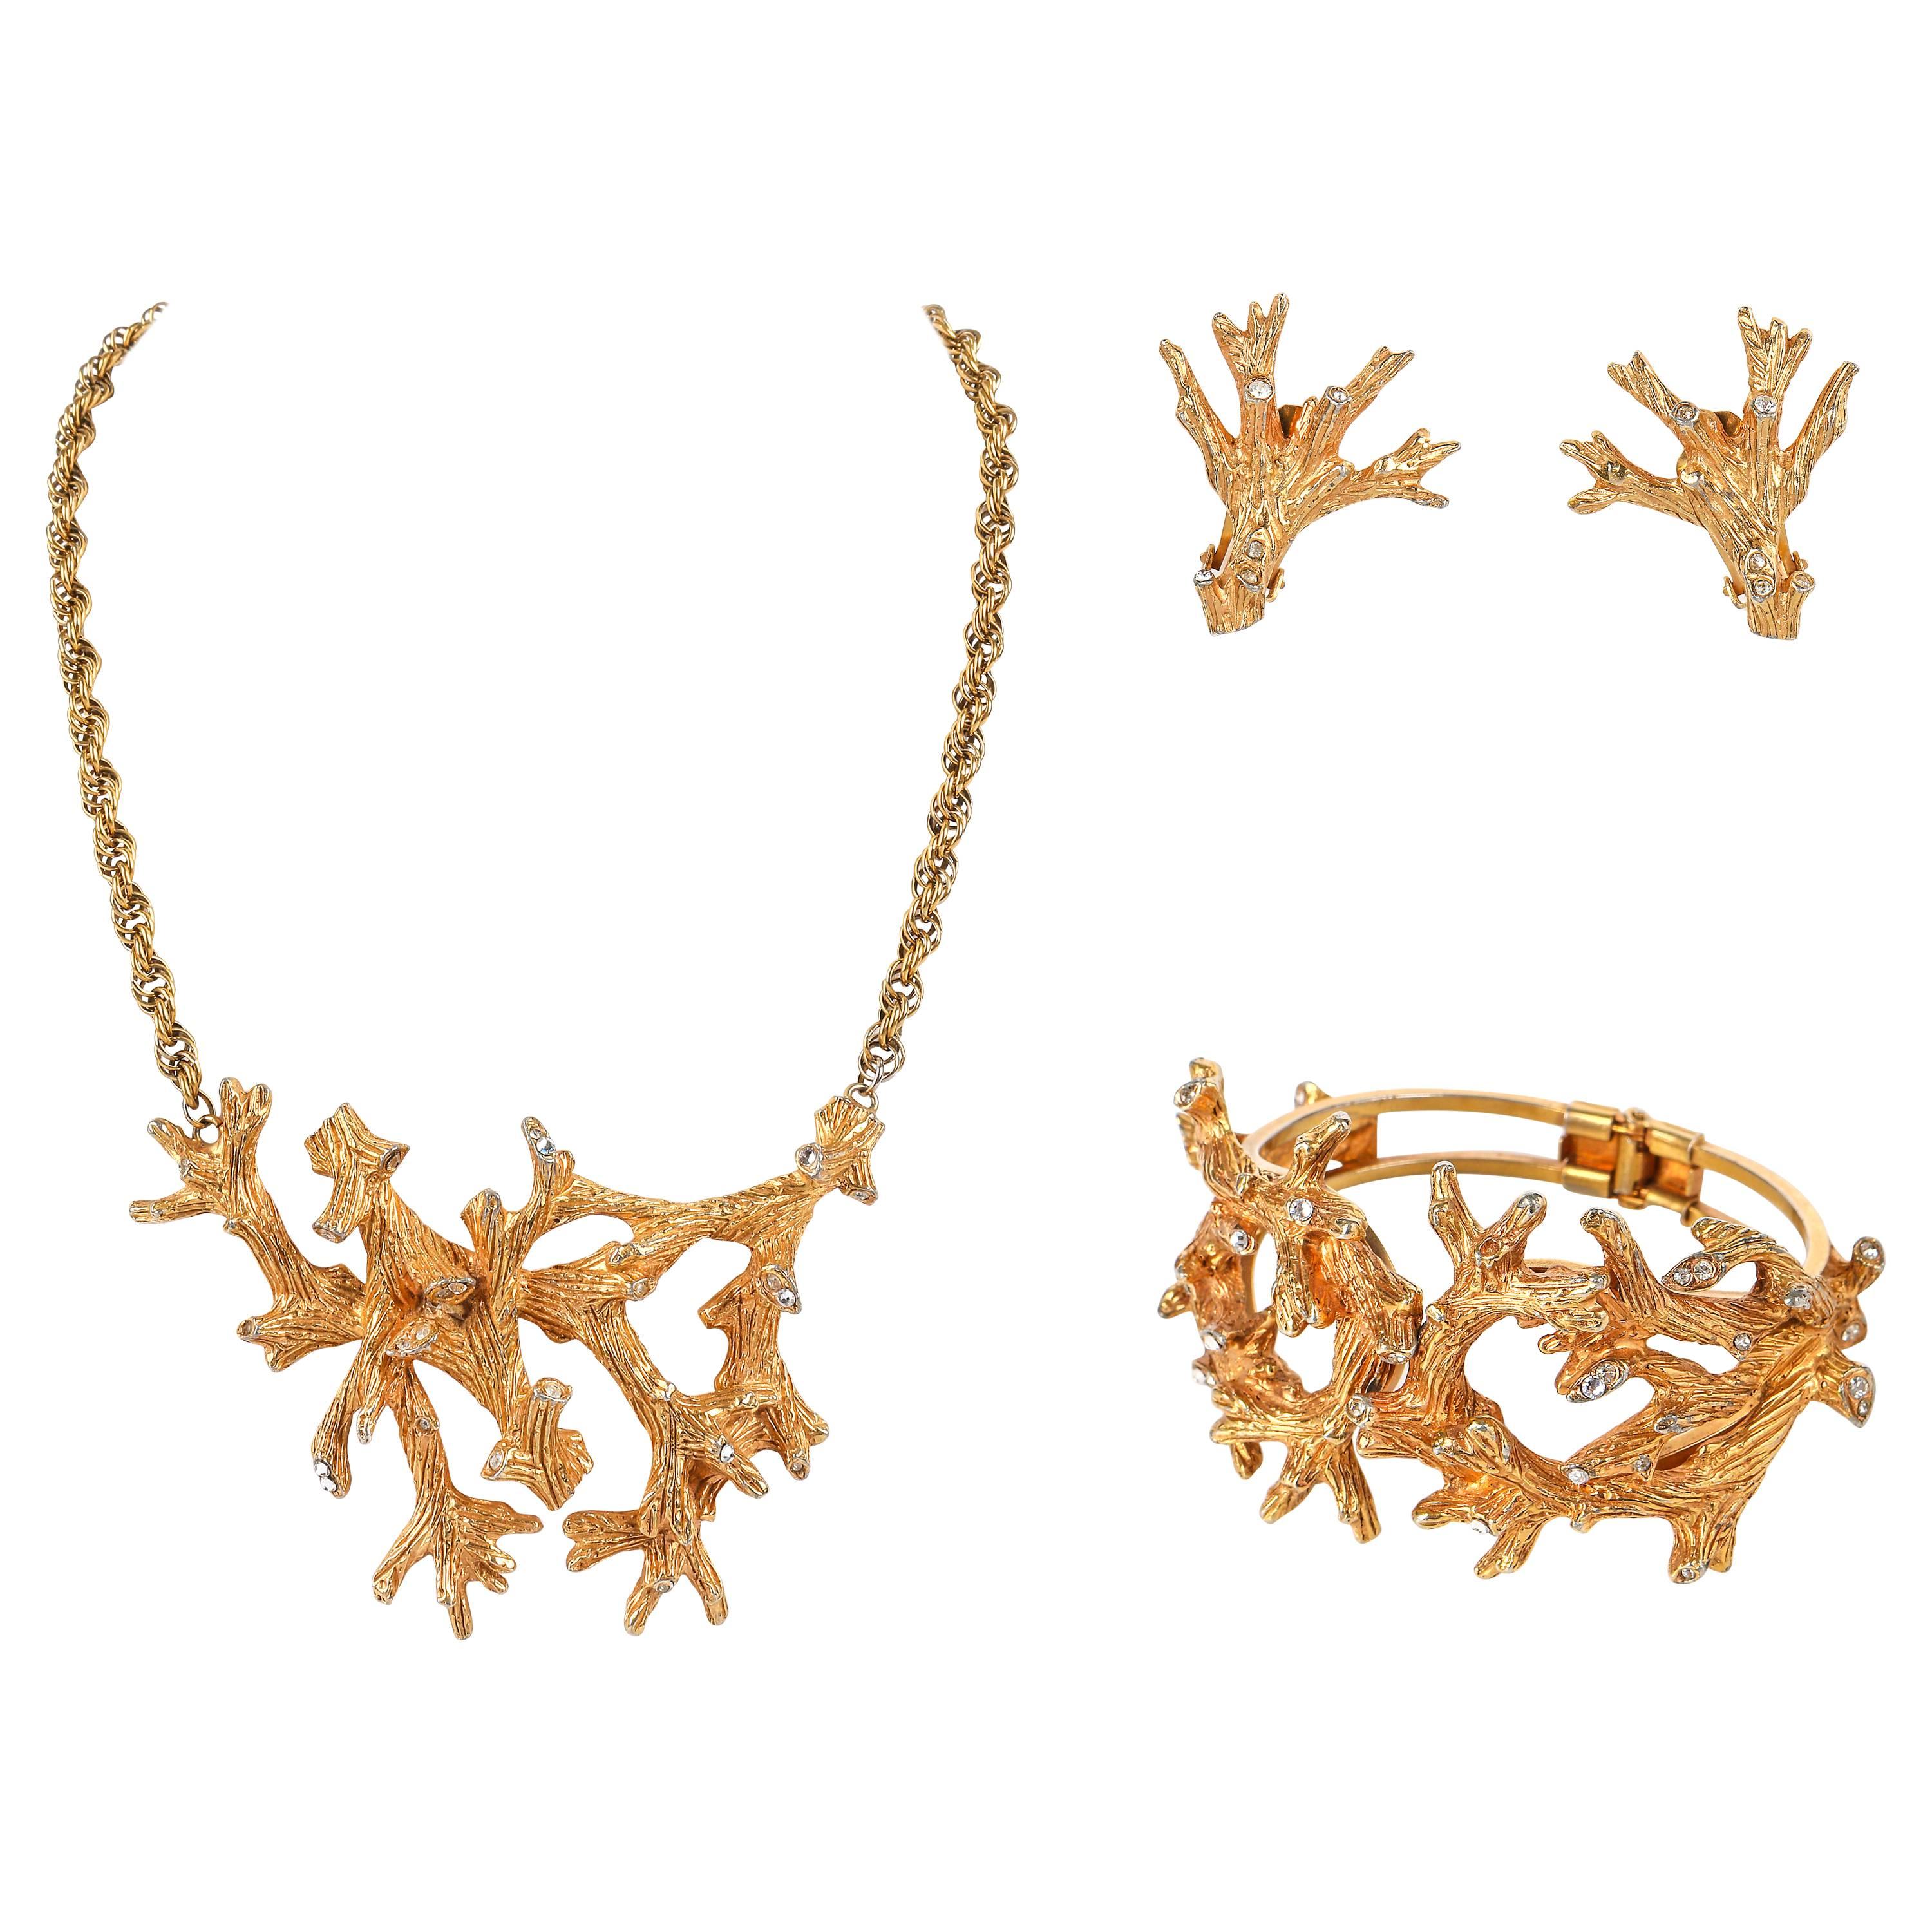 HATTIE CARNEGIE A.I.C C. Boucles d'oreilles Branch en cristal doré Collier Bracelet Parure